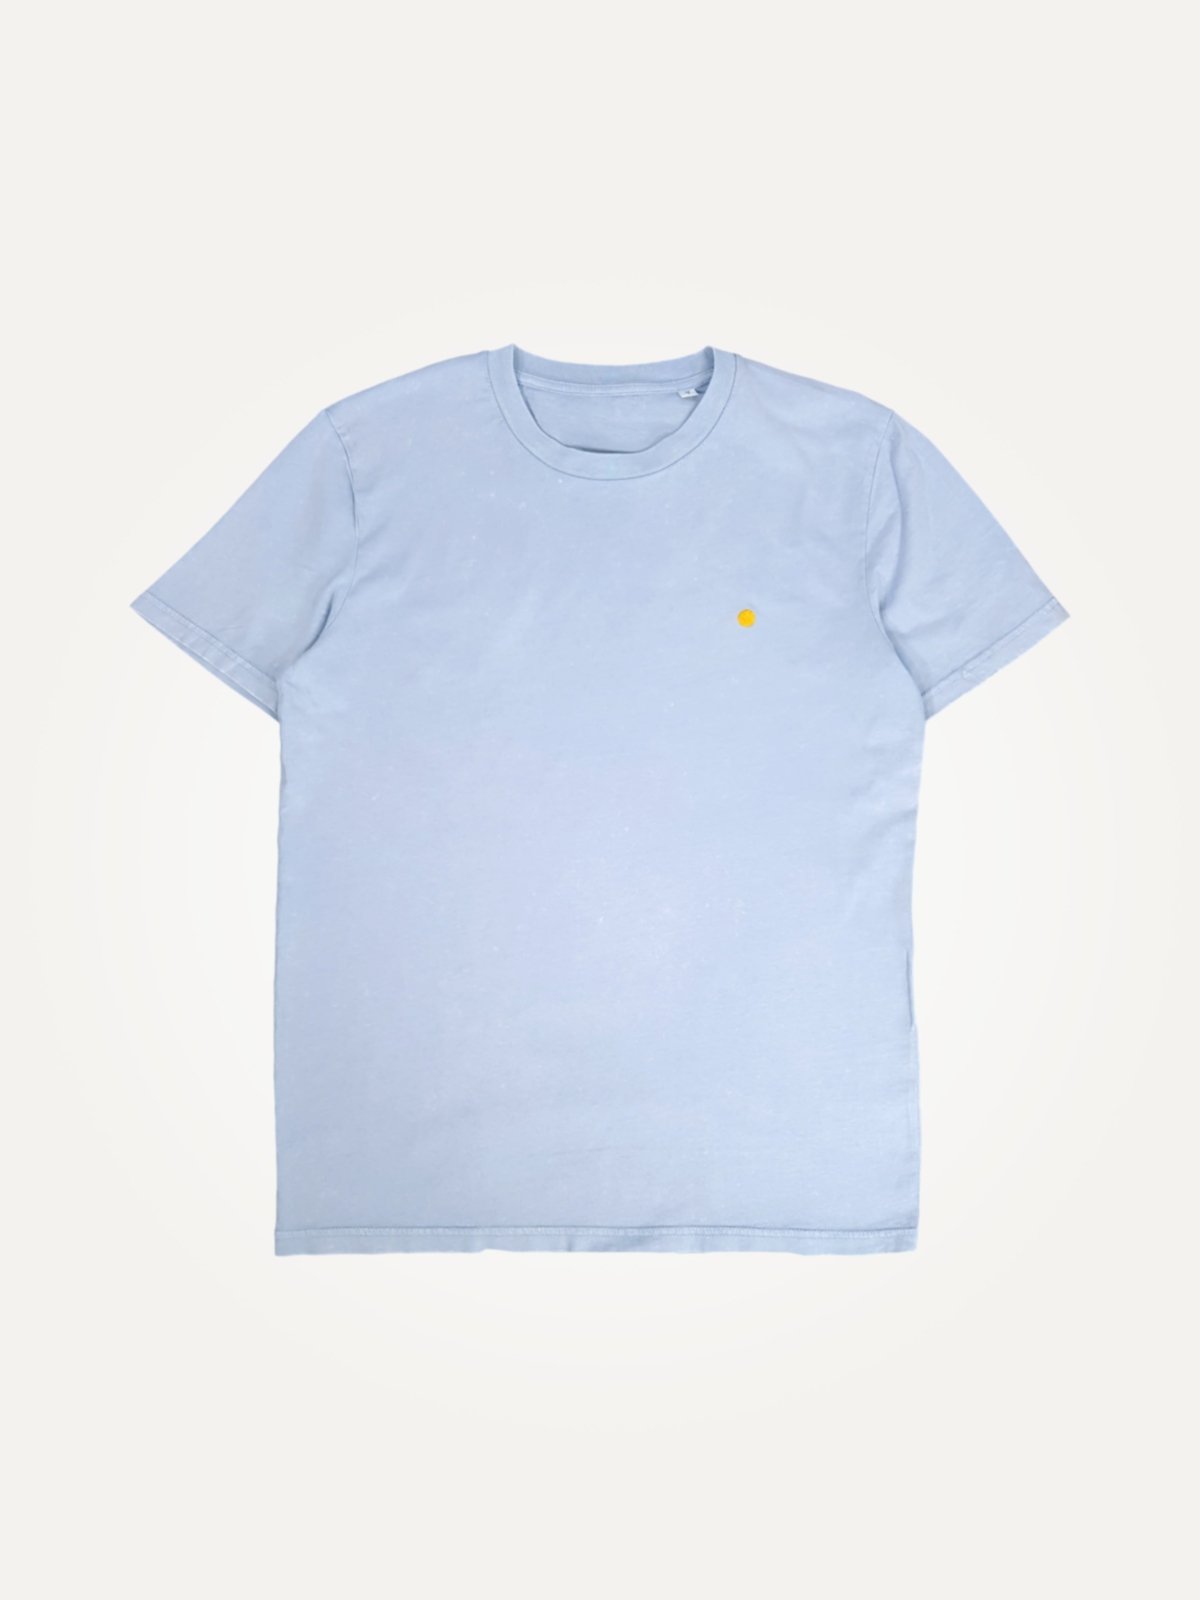 yellow dot G. Dyed Aged Serene Blue Unisex Tees te koop in de webshop van Almost Summer Amsterdam